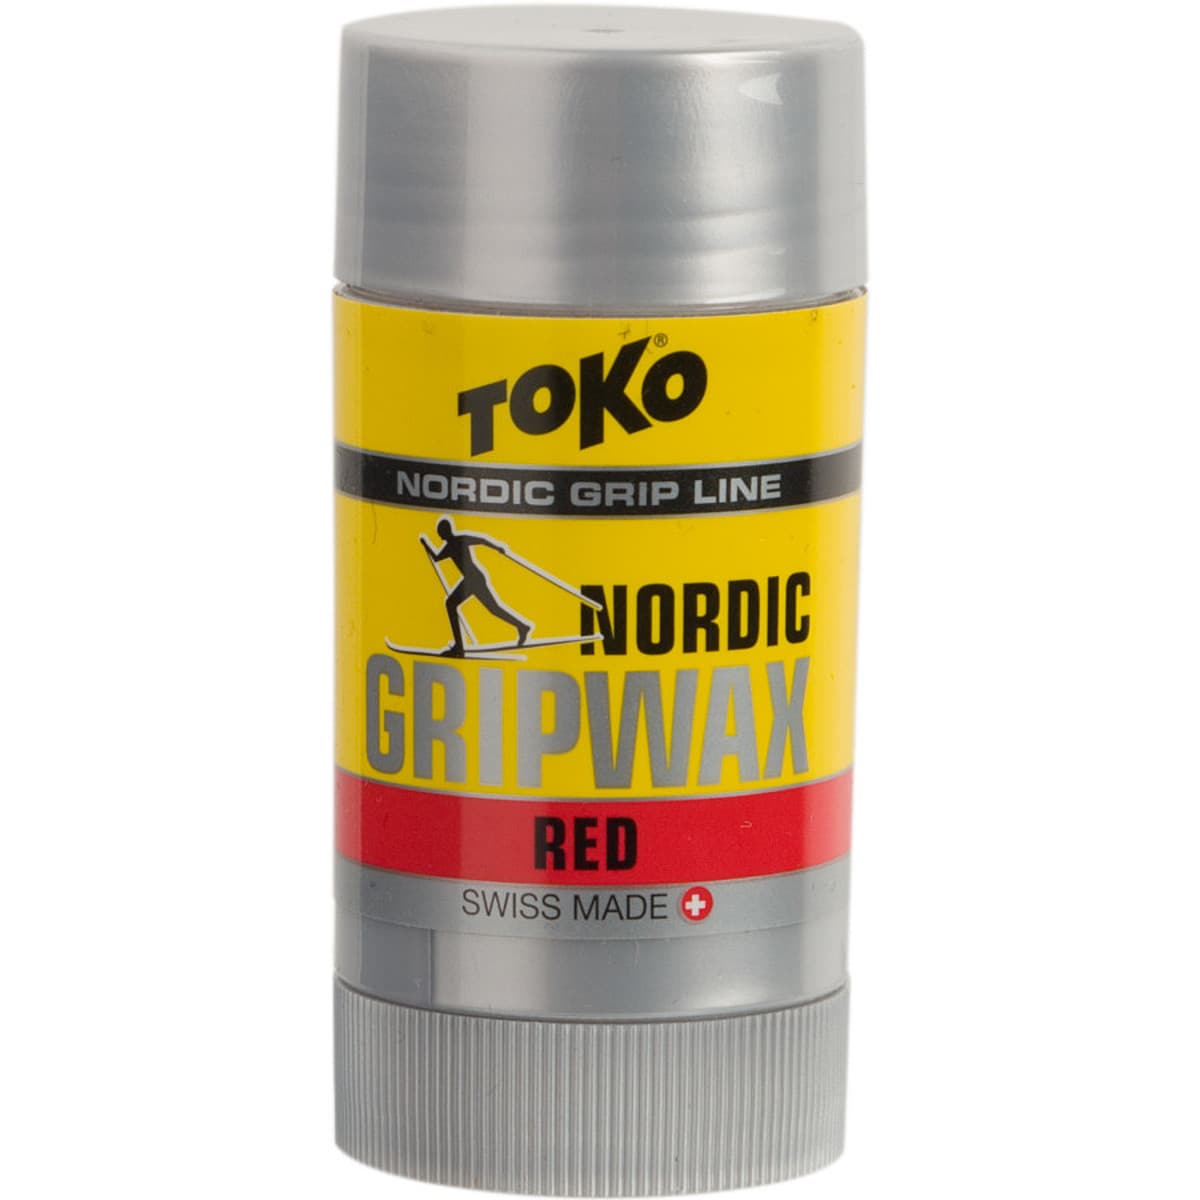 Toko Nordic Grip Wax